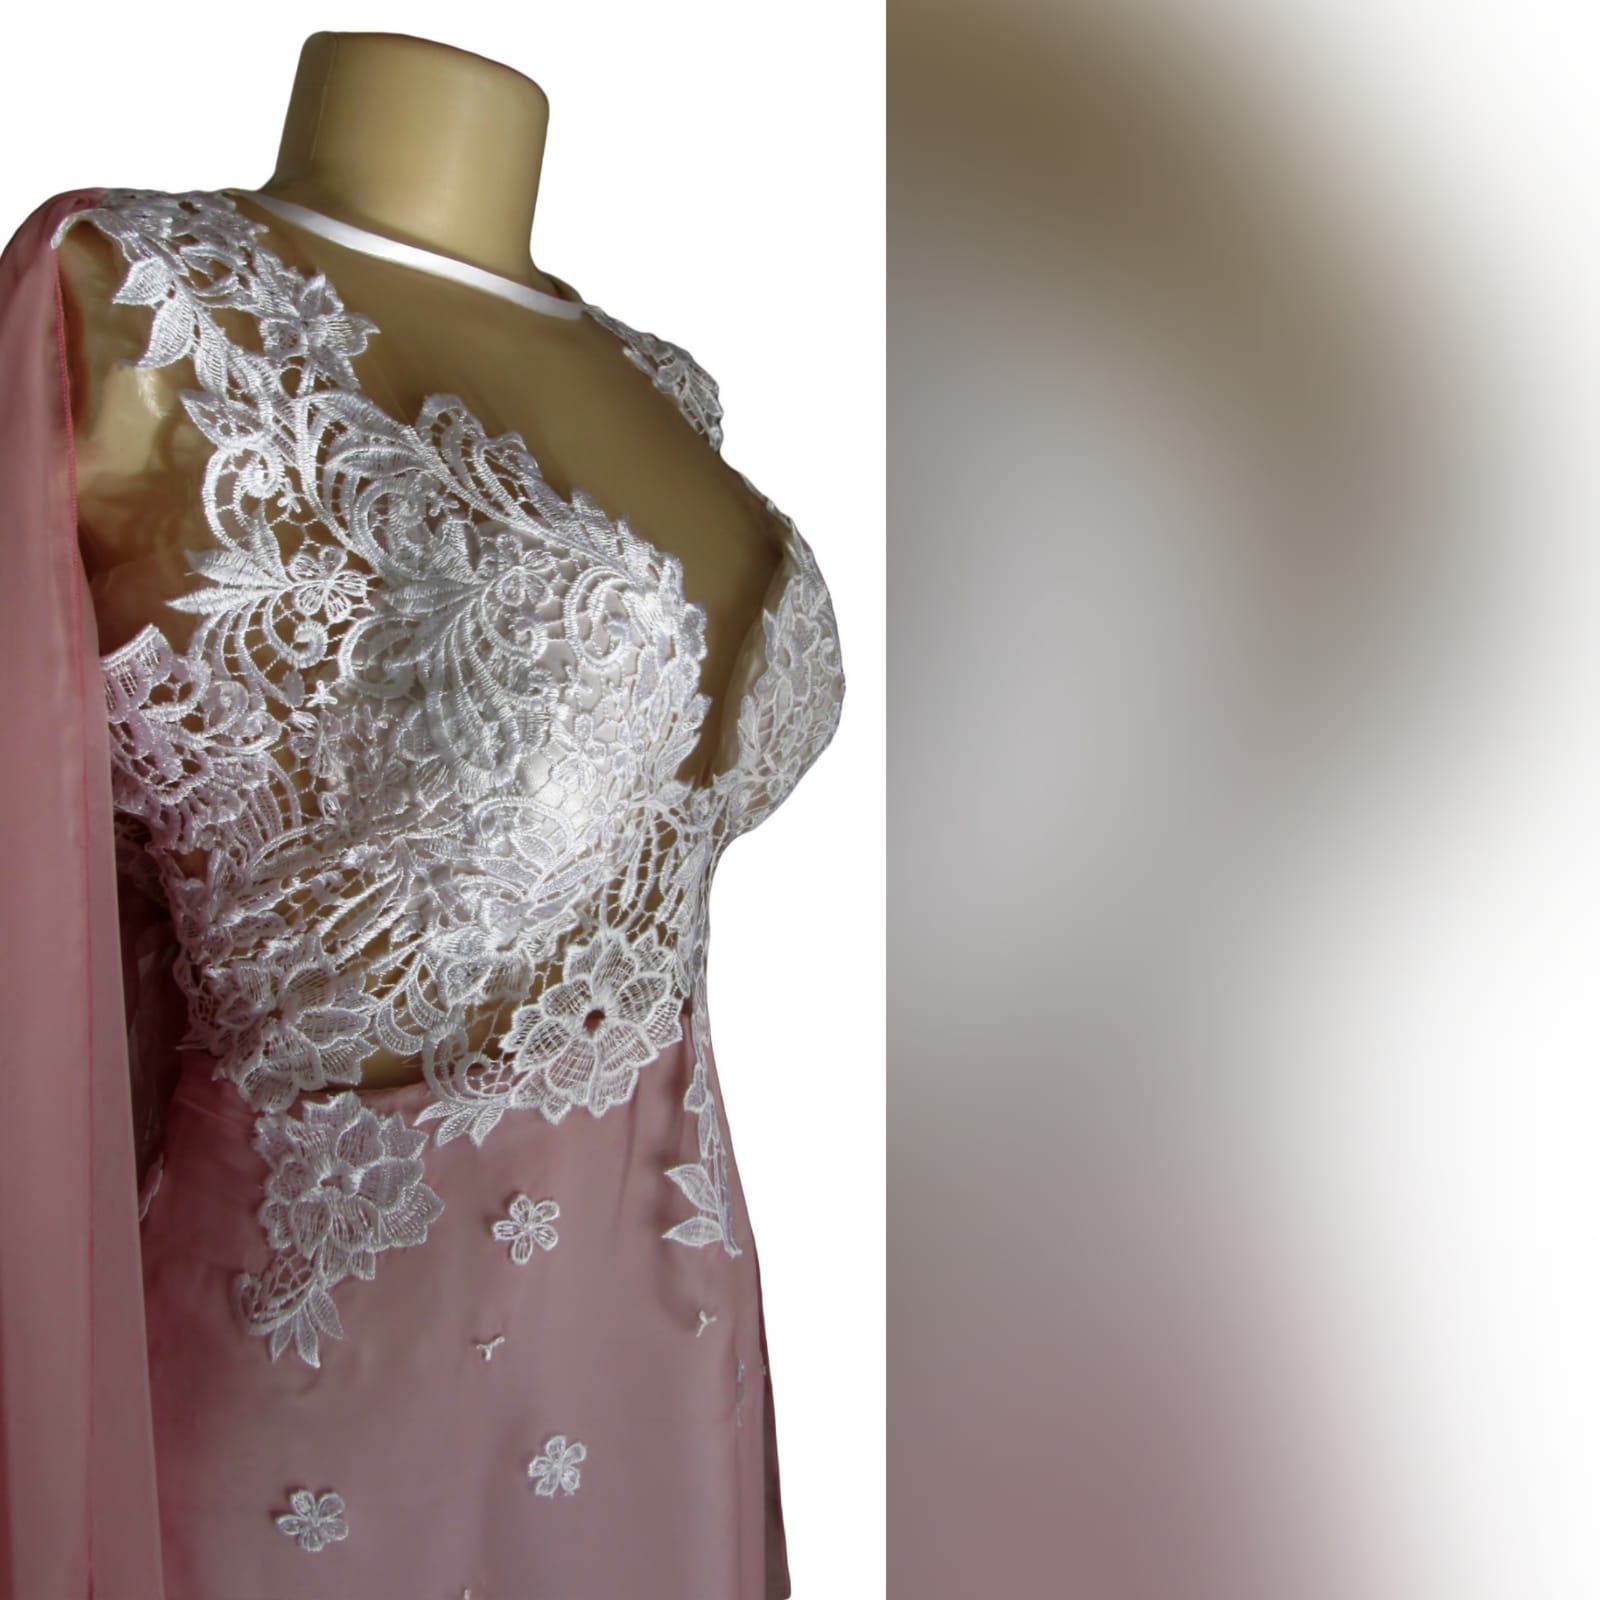 Pink and white lace bodice, long chiffon prom dress 3 pink and white lace bodice, long chiffon prom dress. With a v back and a long chiffon cape.